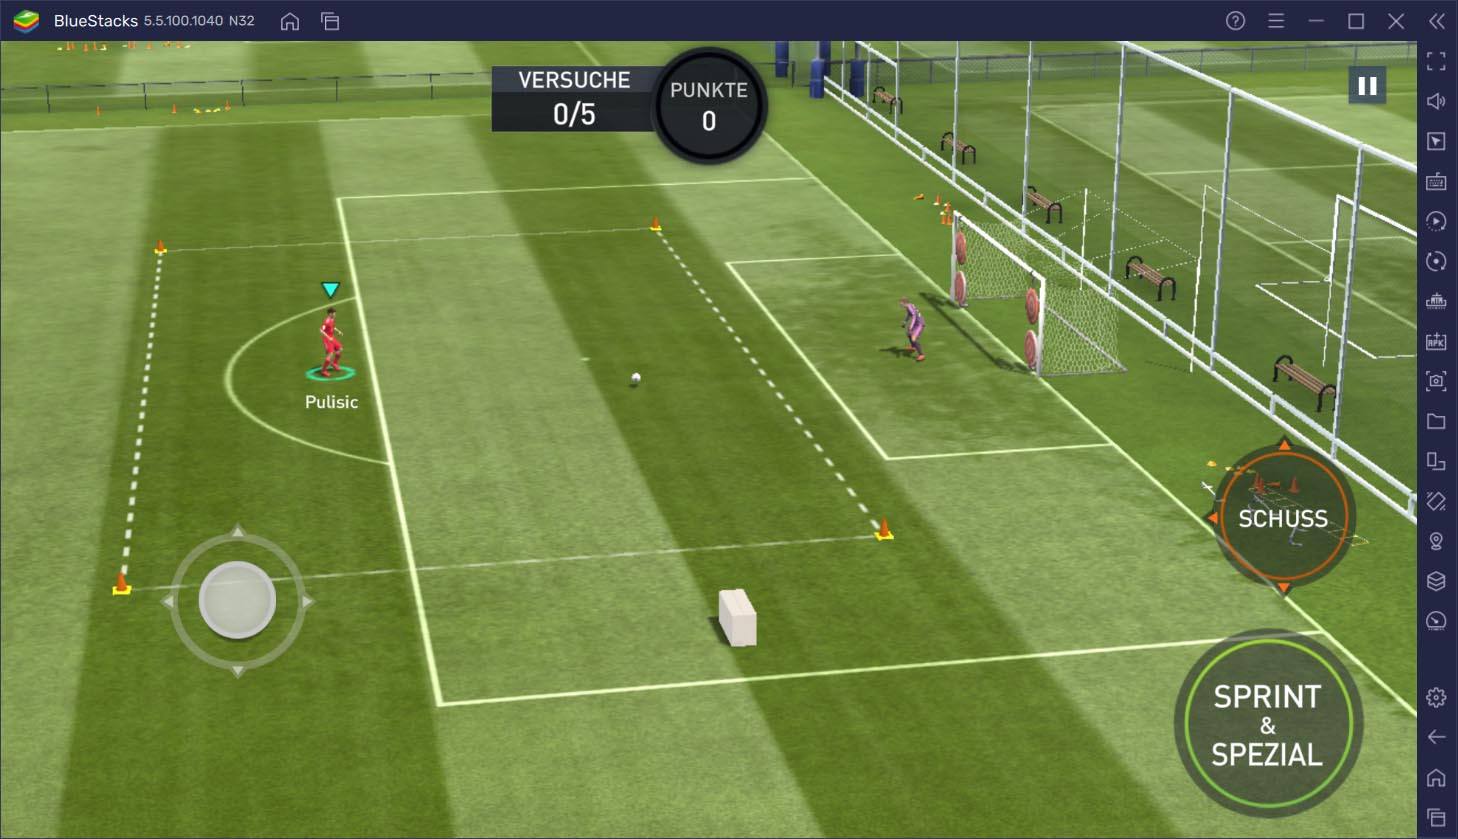 FIFA Fussball auf dem PC – Die besten Tipps und Tricks, um jedes Match zu gewinnen